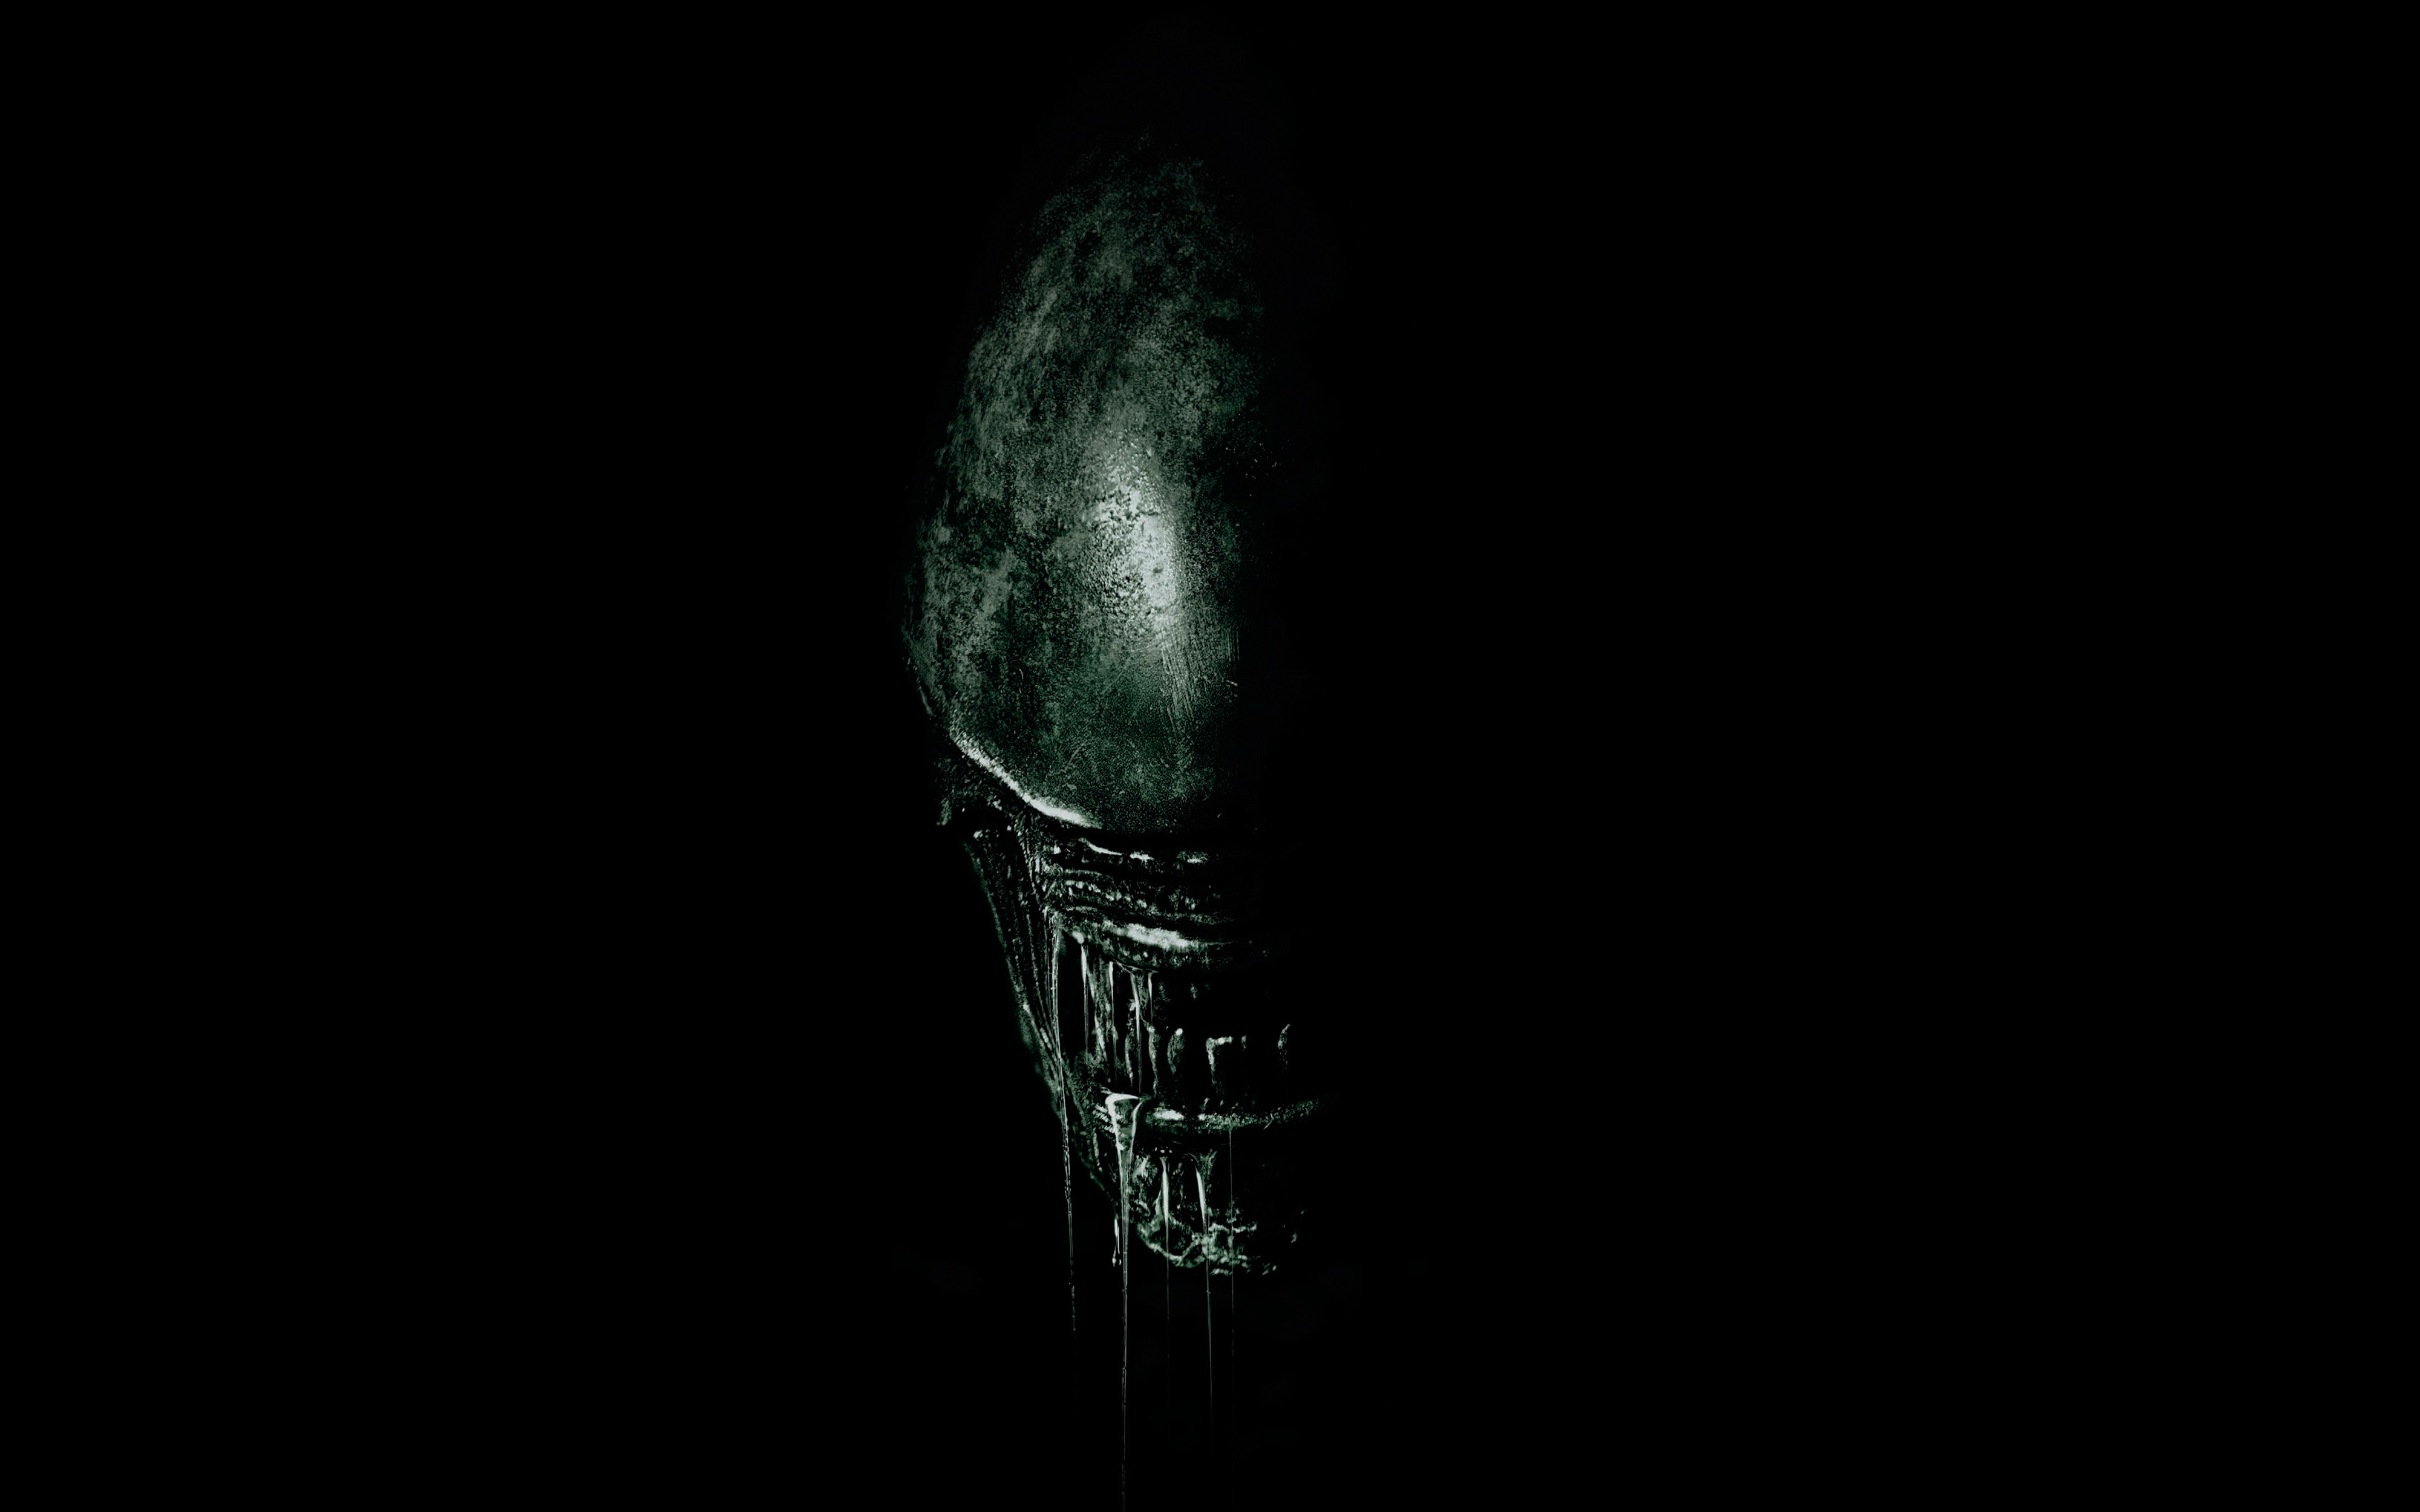 2017 alien covenant image